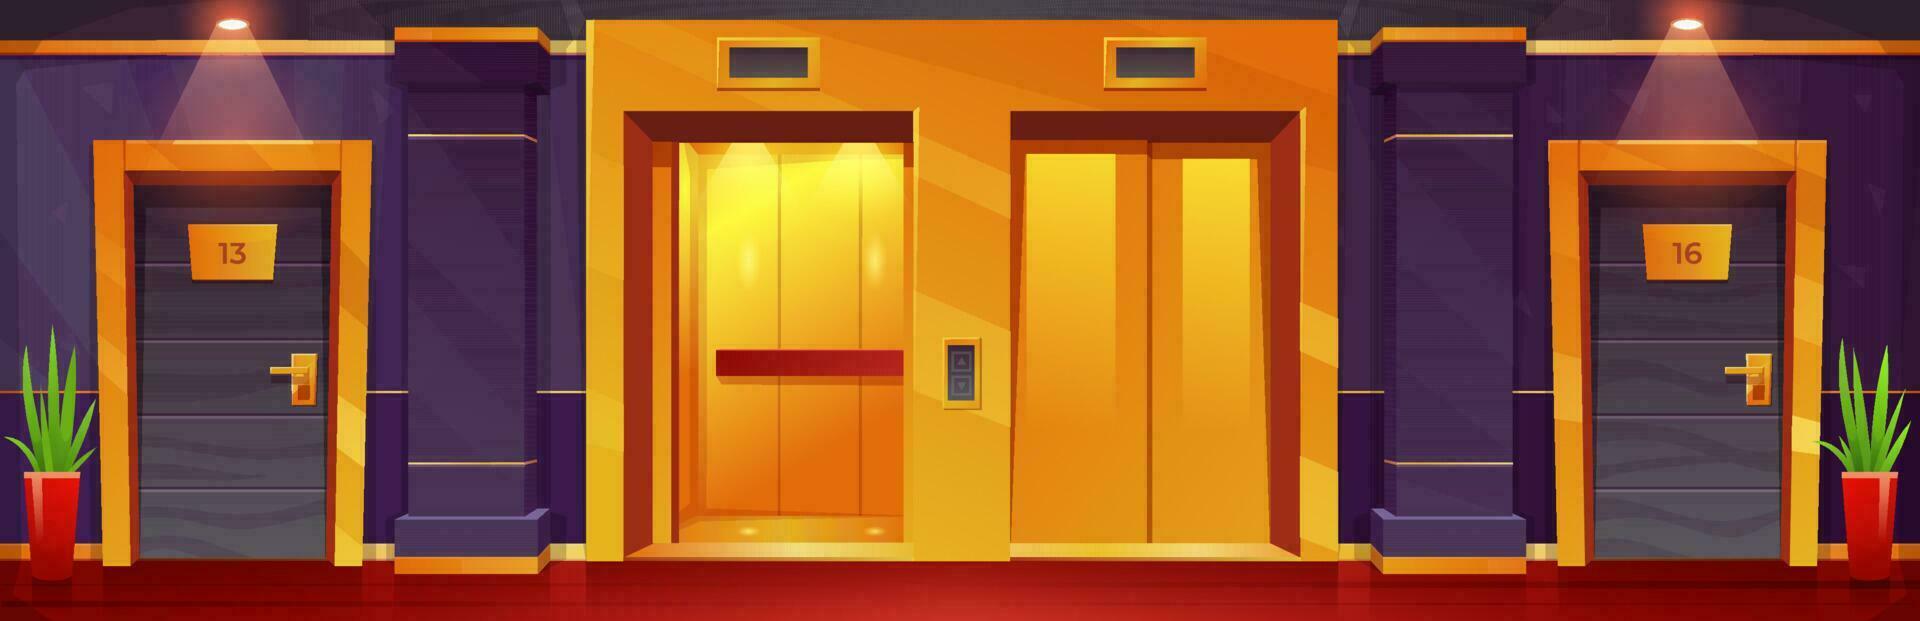 tekenfilm luxe hotel verdieping met gouden liften vector